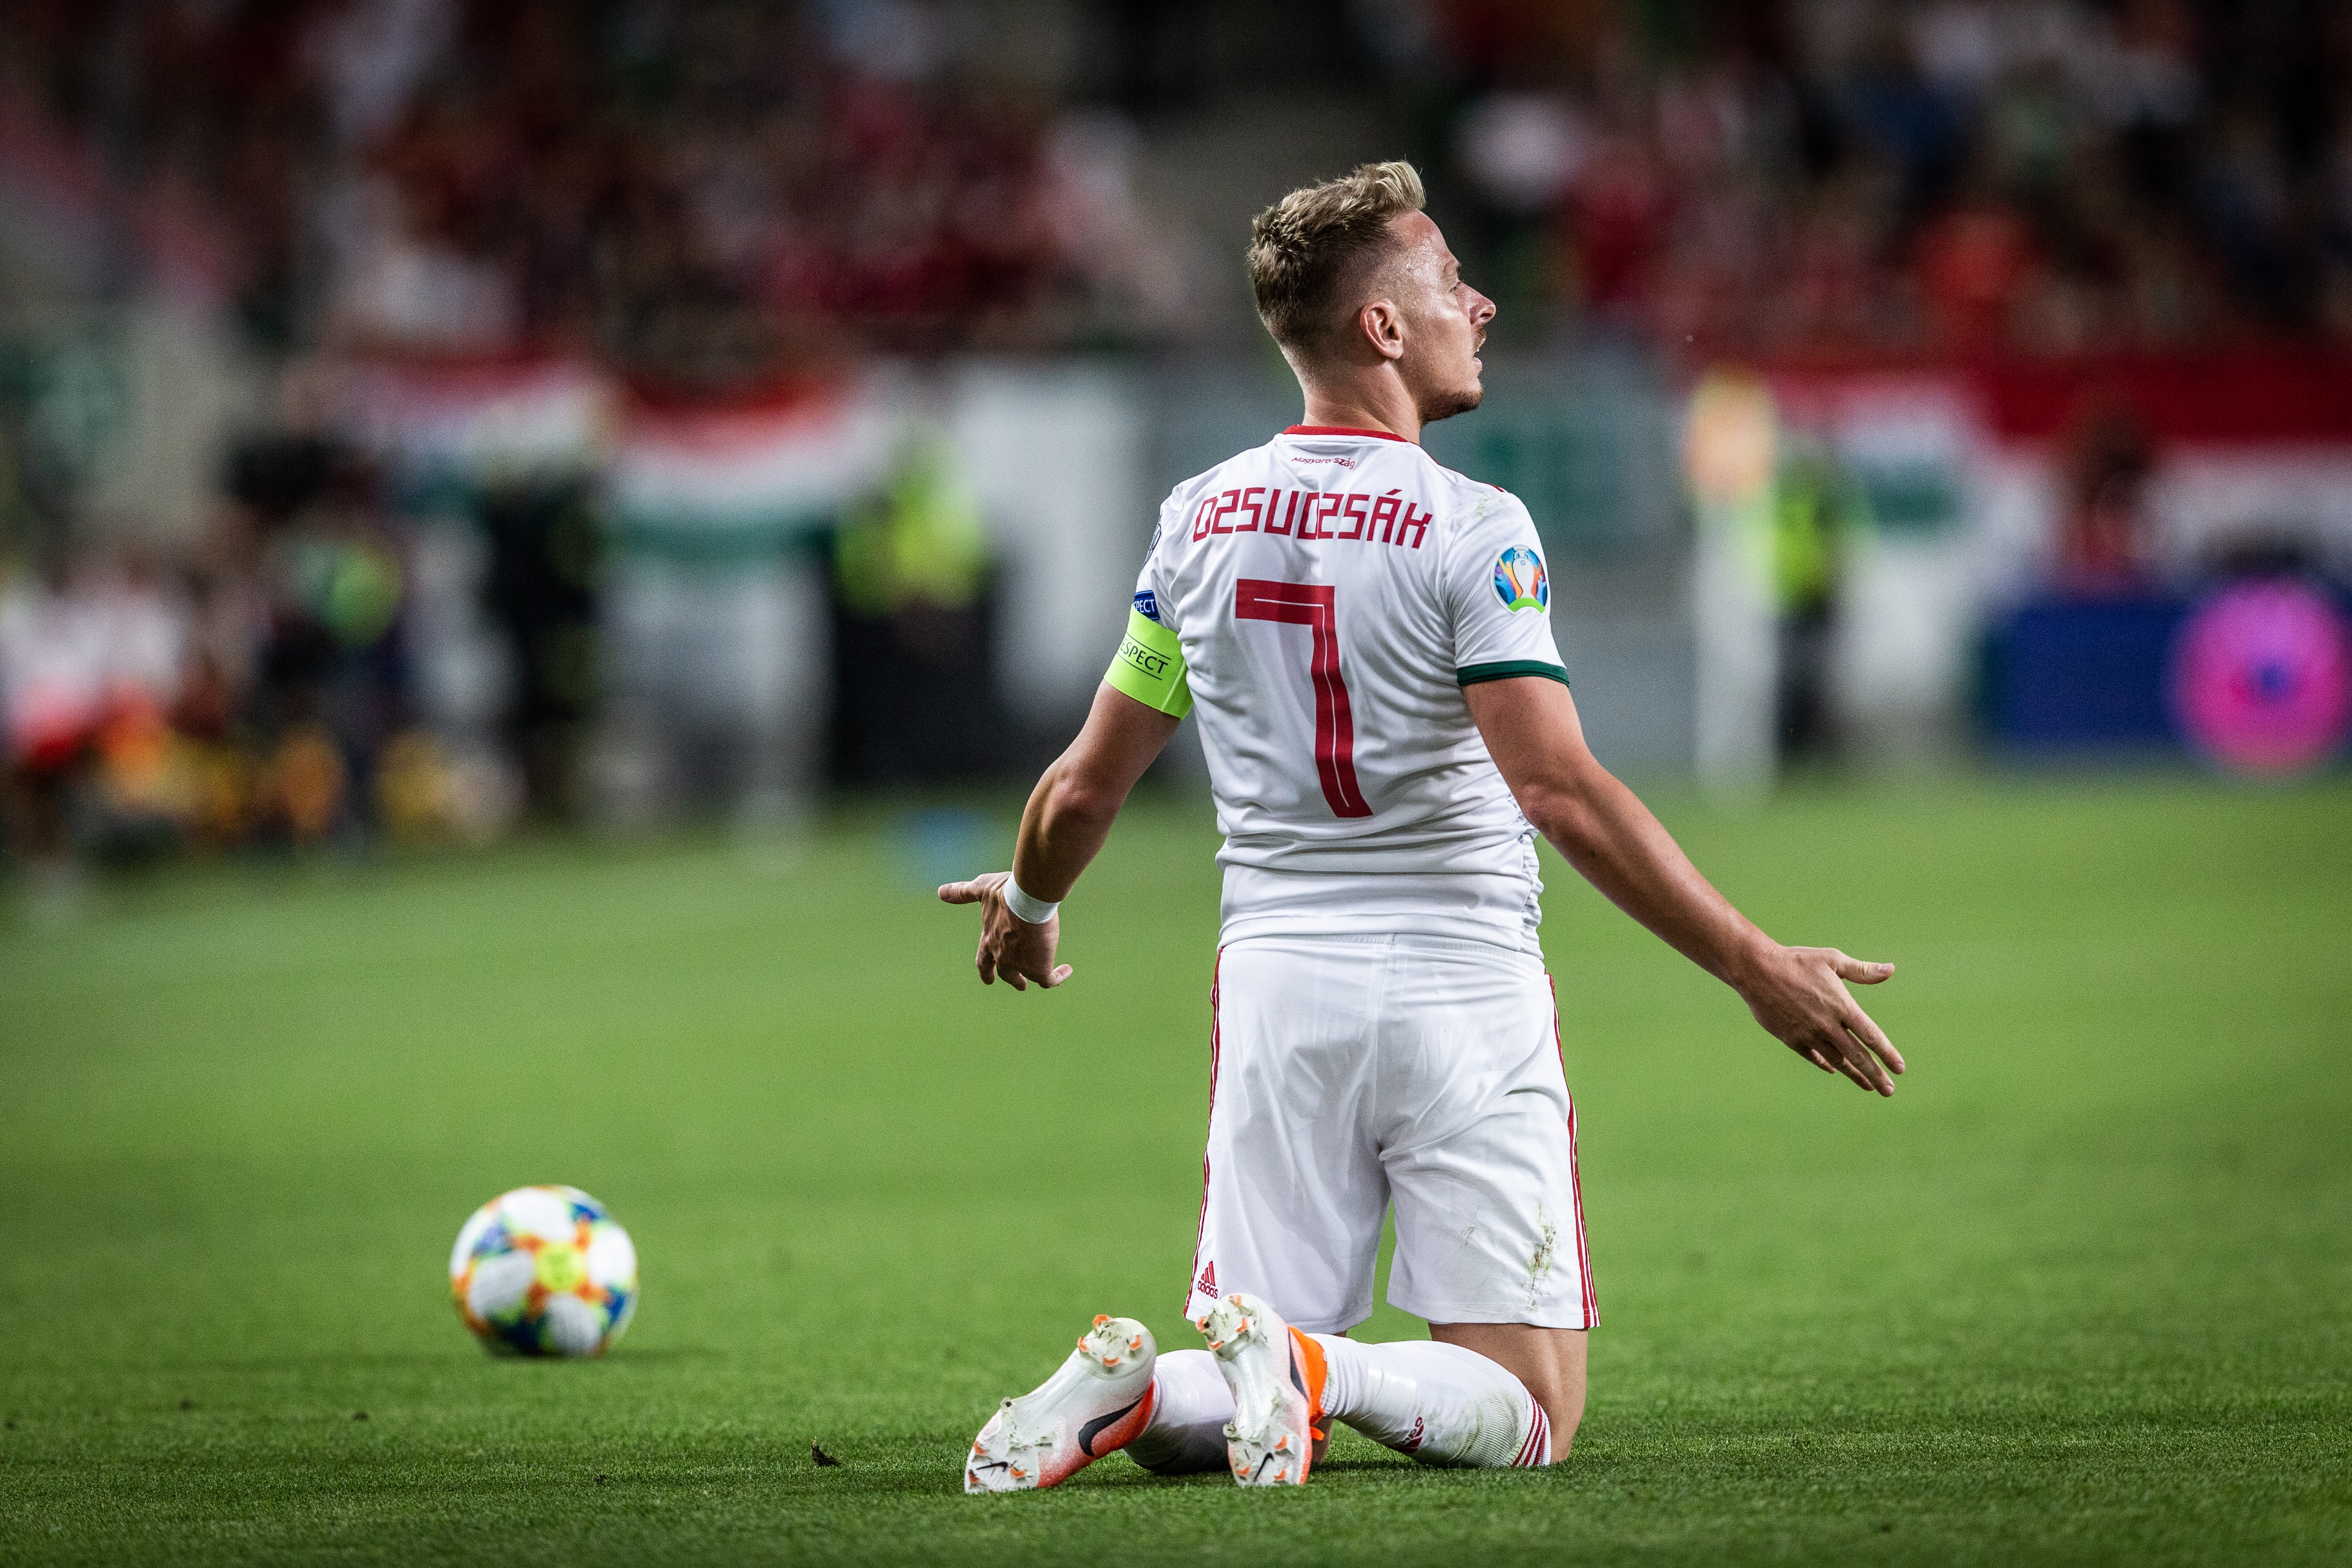 Magyarország–Wales: 1-0 – Újra győzött a válogatottunk! – galéria - Blikk